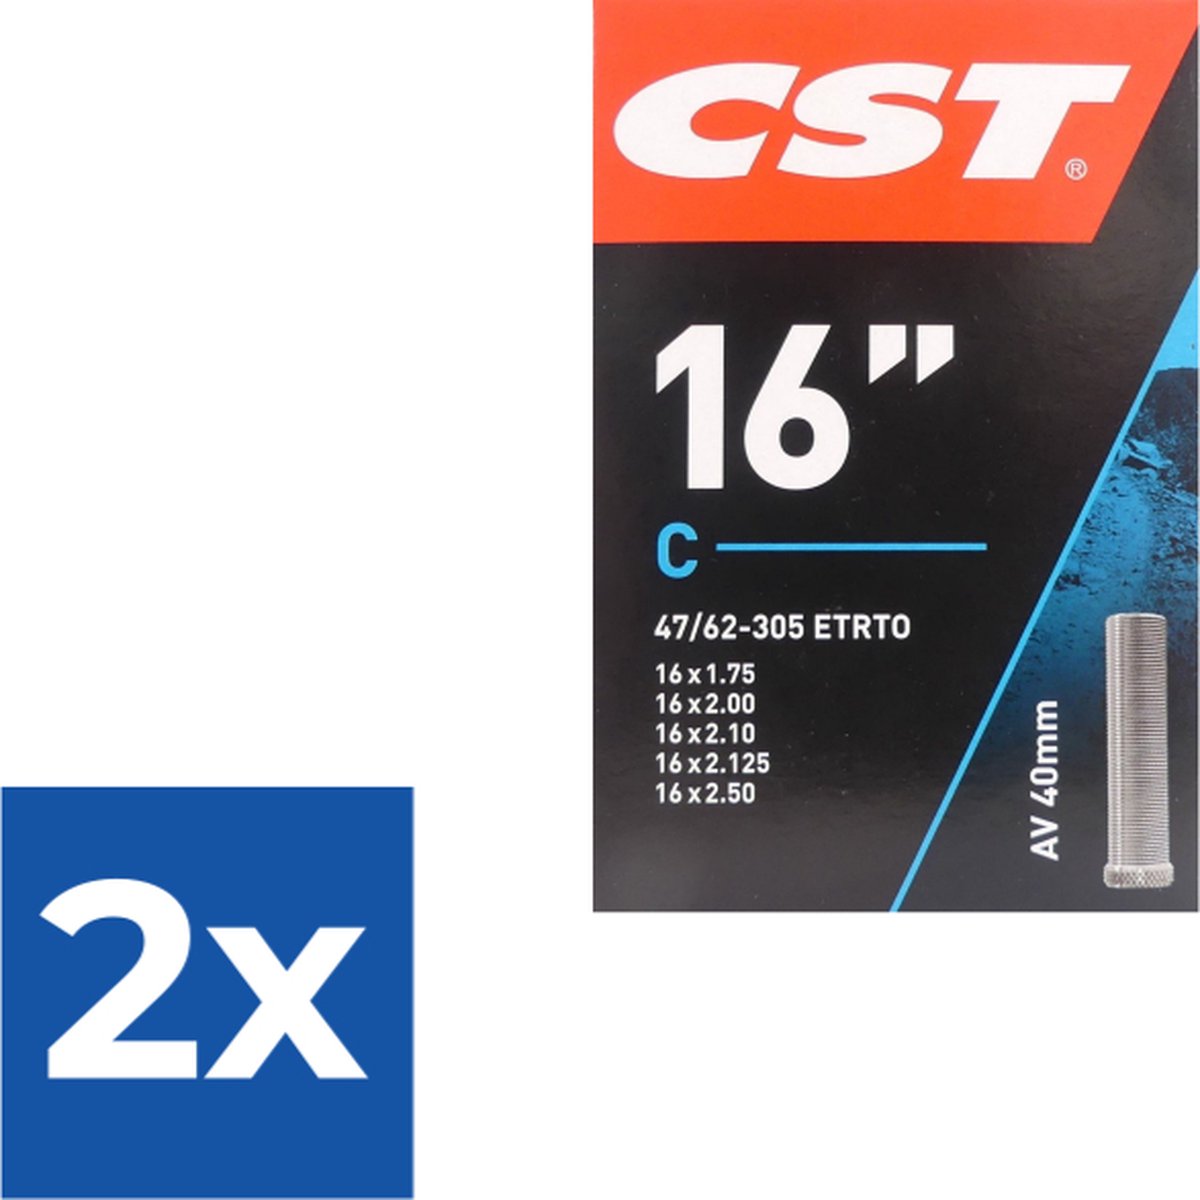 Binnenband CST AV40 16x 1.75 / 47/62-305 - Voordeelverpakking 2 stuks